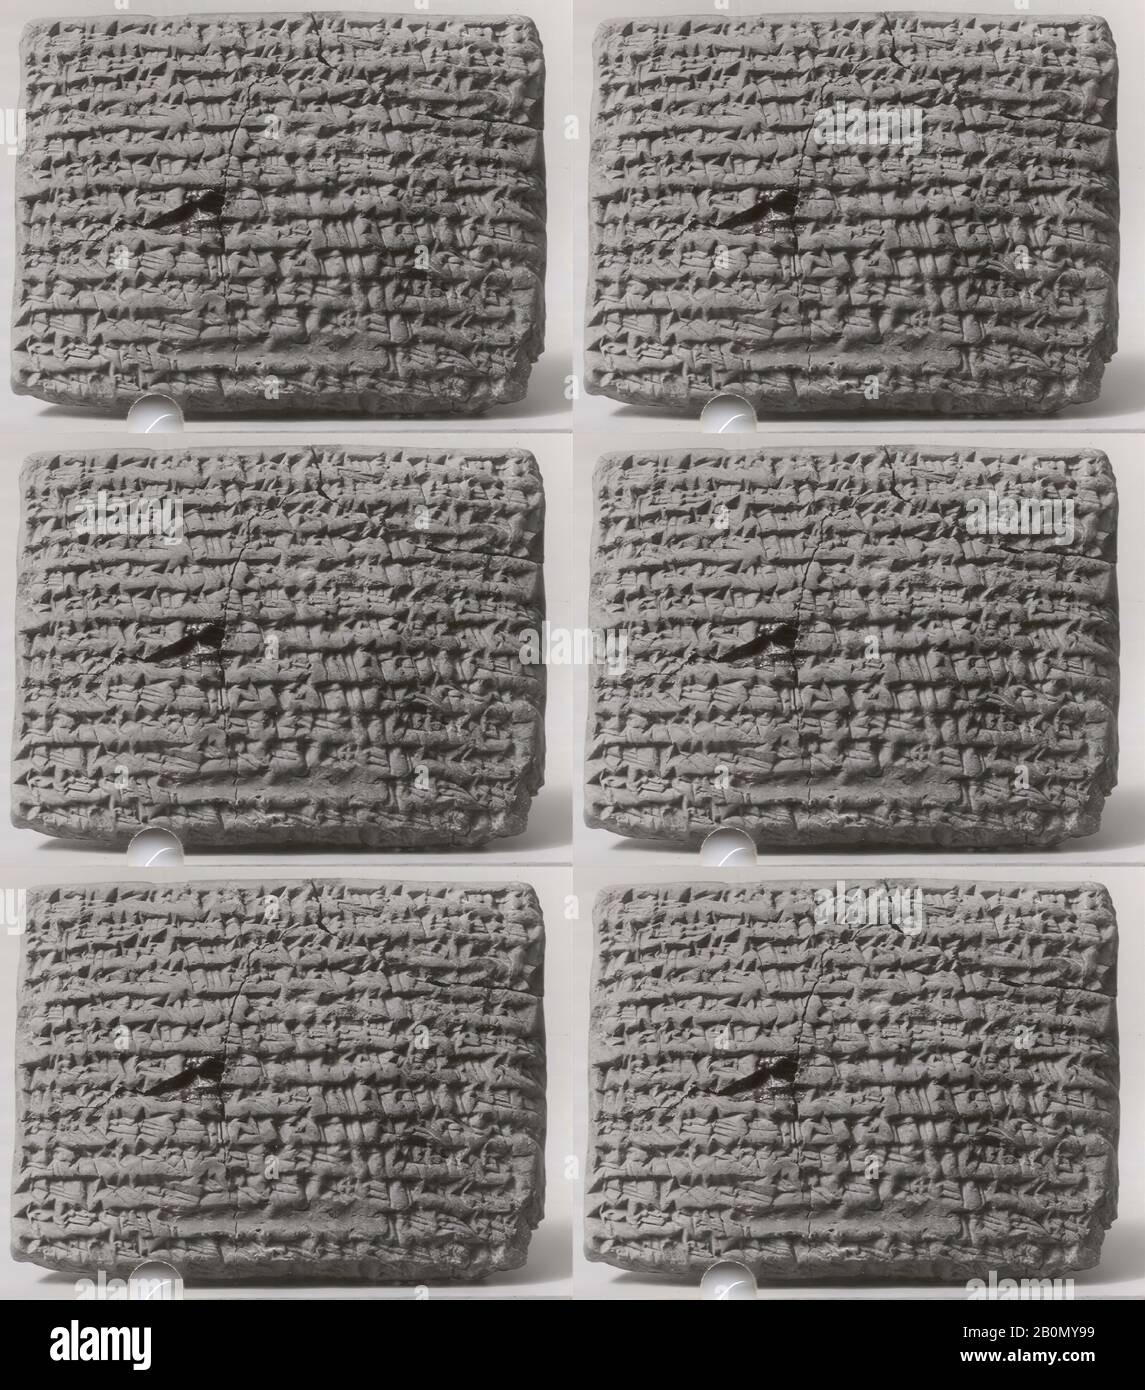 Tablette cuneiform: Prise en charge de la dette par garant, archive de Bel-remanni, Achaemenid, Achaemenid, Date CA. 509 C.-B., Mésopotamie, probablement de Babylone (Hillah moderne), Achaémenid, Clay, 6 x 8 x 2,7 cm (2 3/8 x 3 1/8 x 1 1/8 in.), Clay-Tablets-Inscrit Banque D'Images